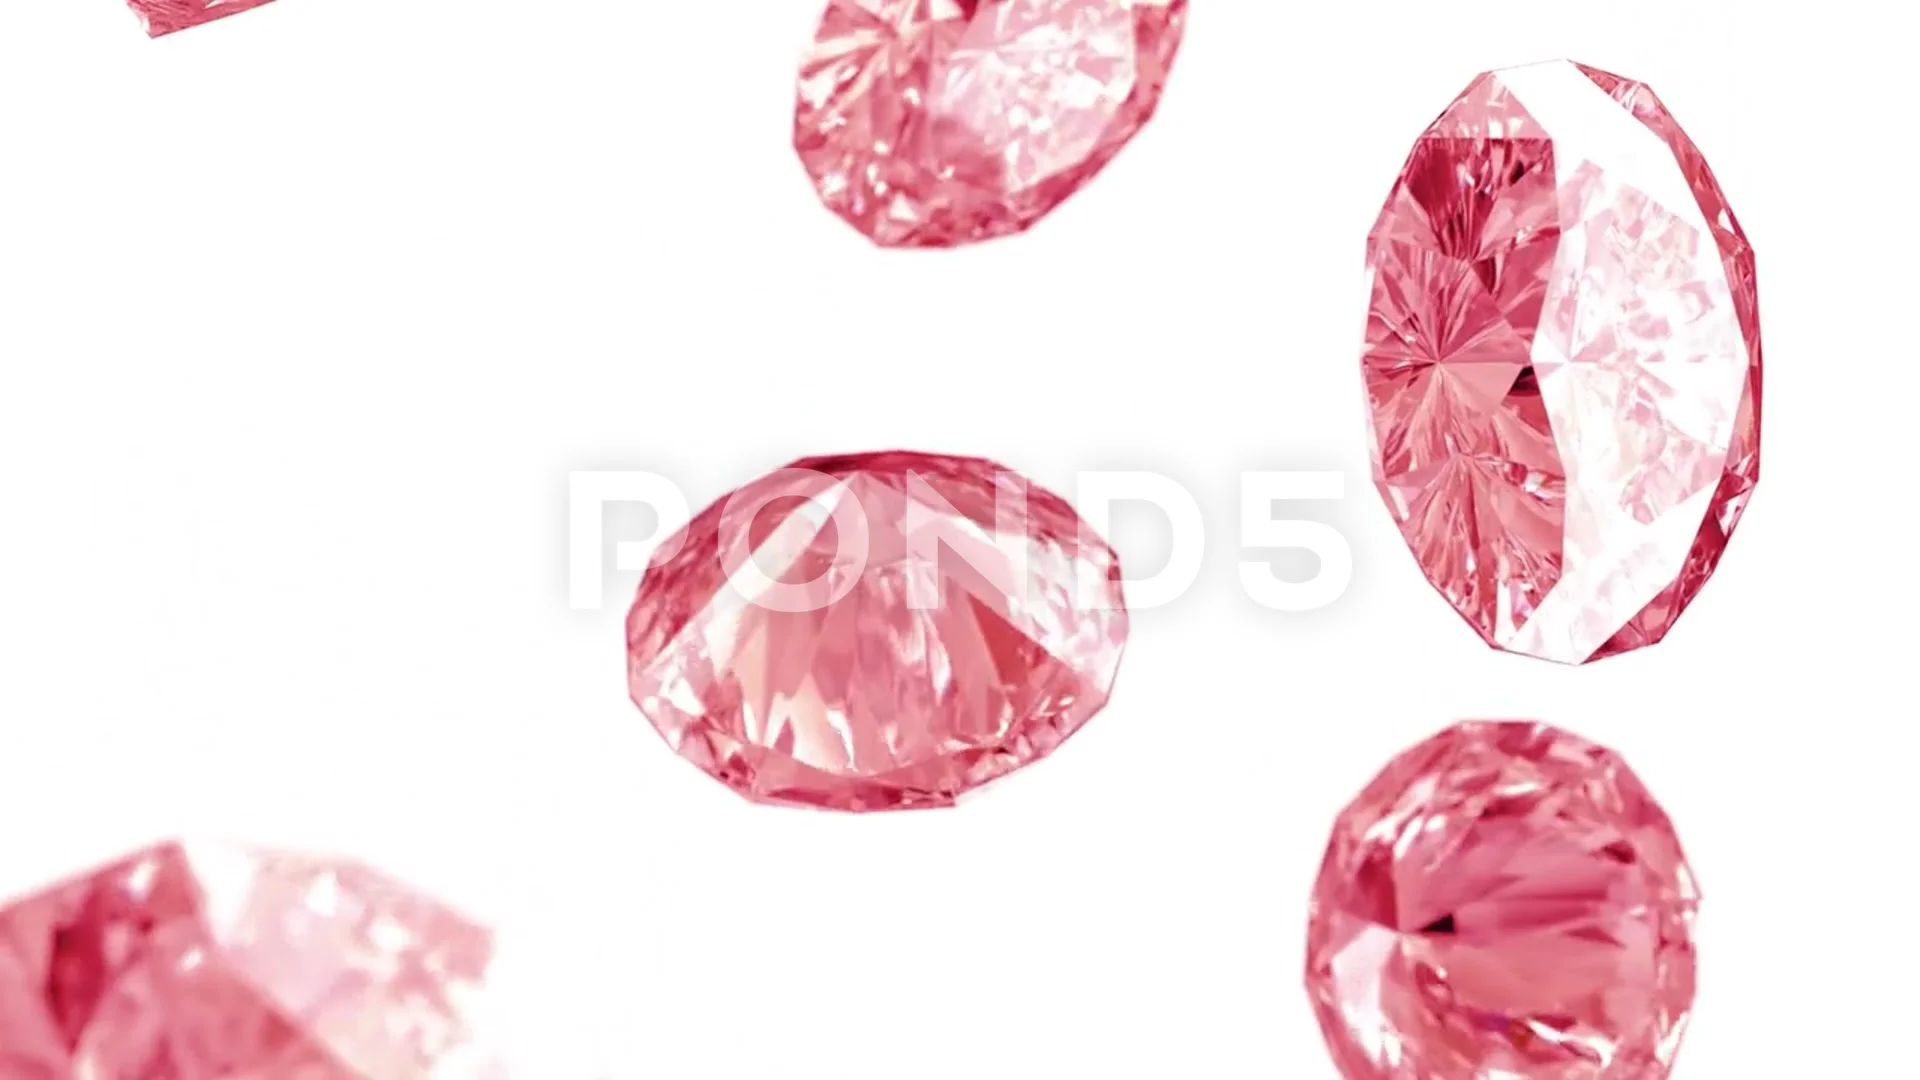 falling pink diamonds background